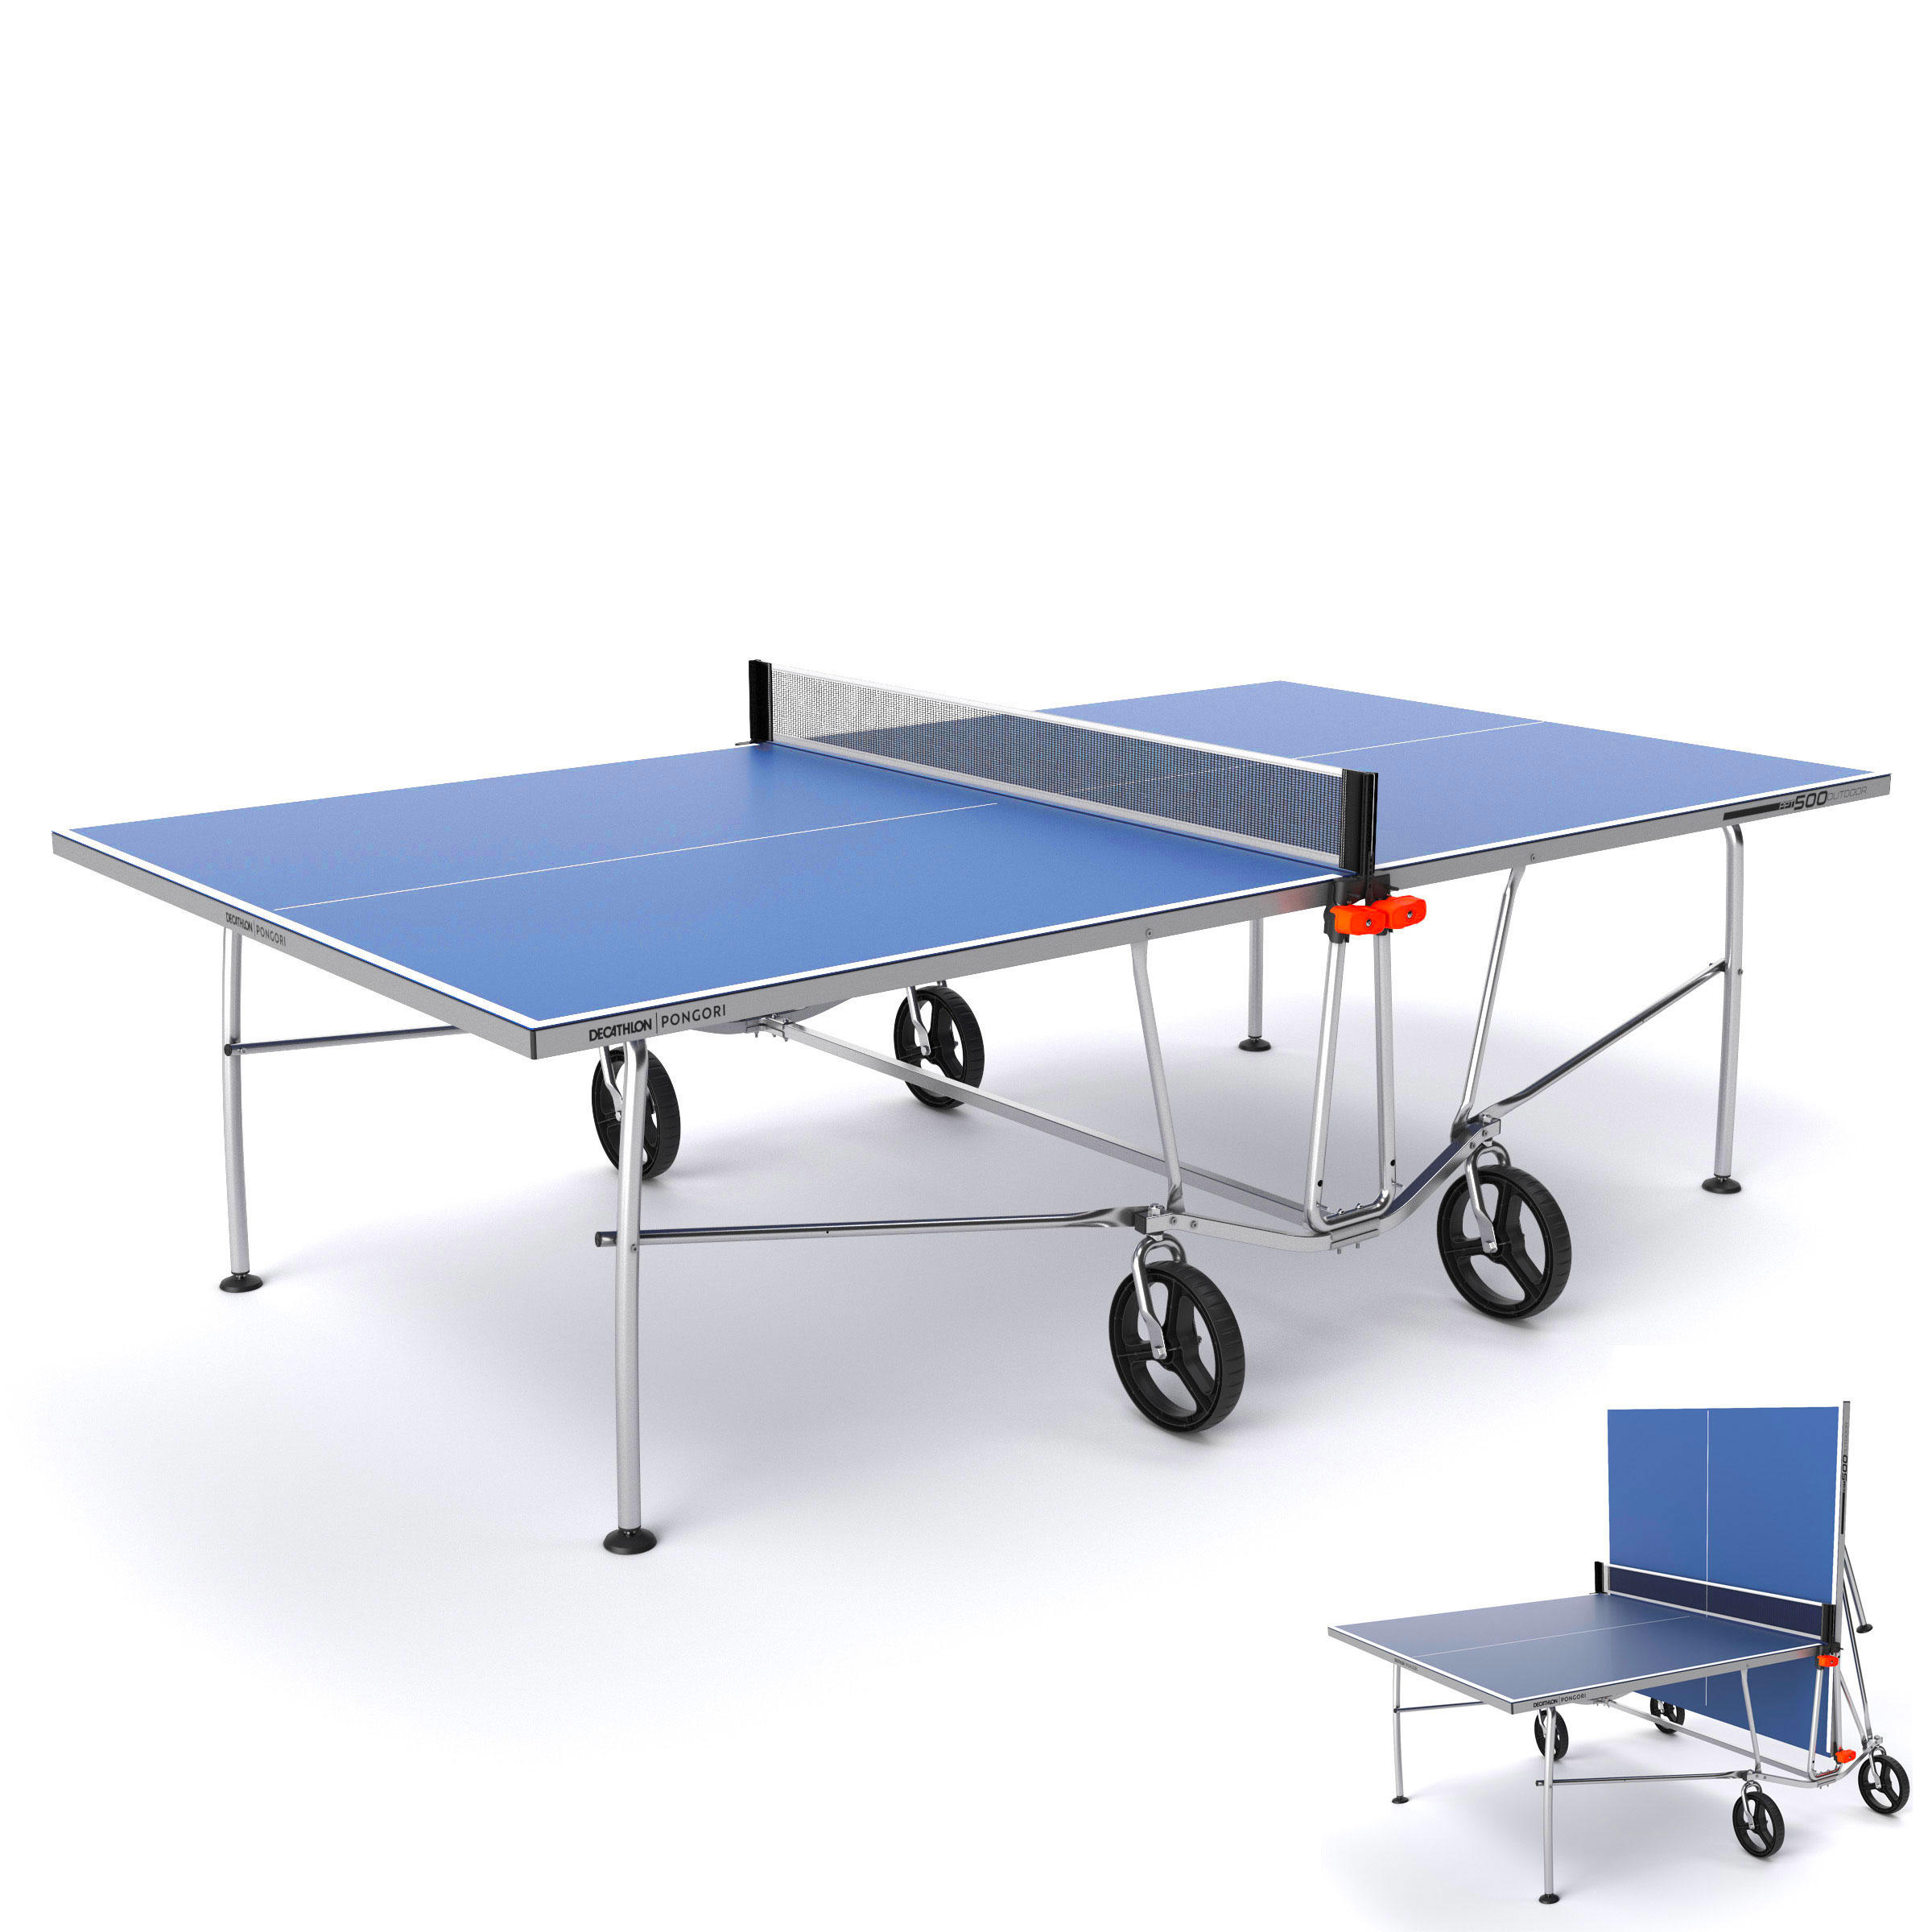 6 Palline 1 Borsa per Formatori Adulti Bambini Indoor Outdoor 2 Racchette Ping Pong Set da Tavolo Professionale con Regolabile Rete Set da Ping Pong 